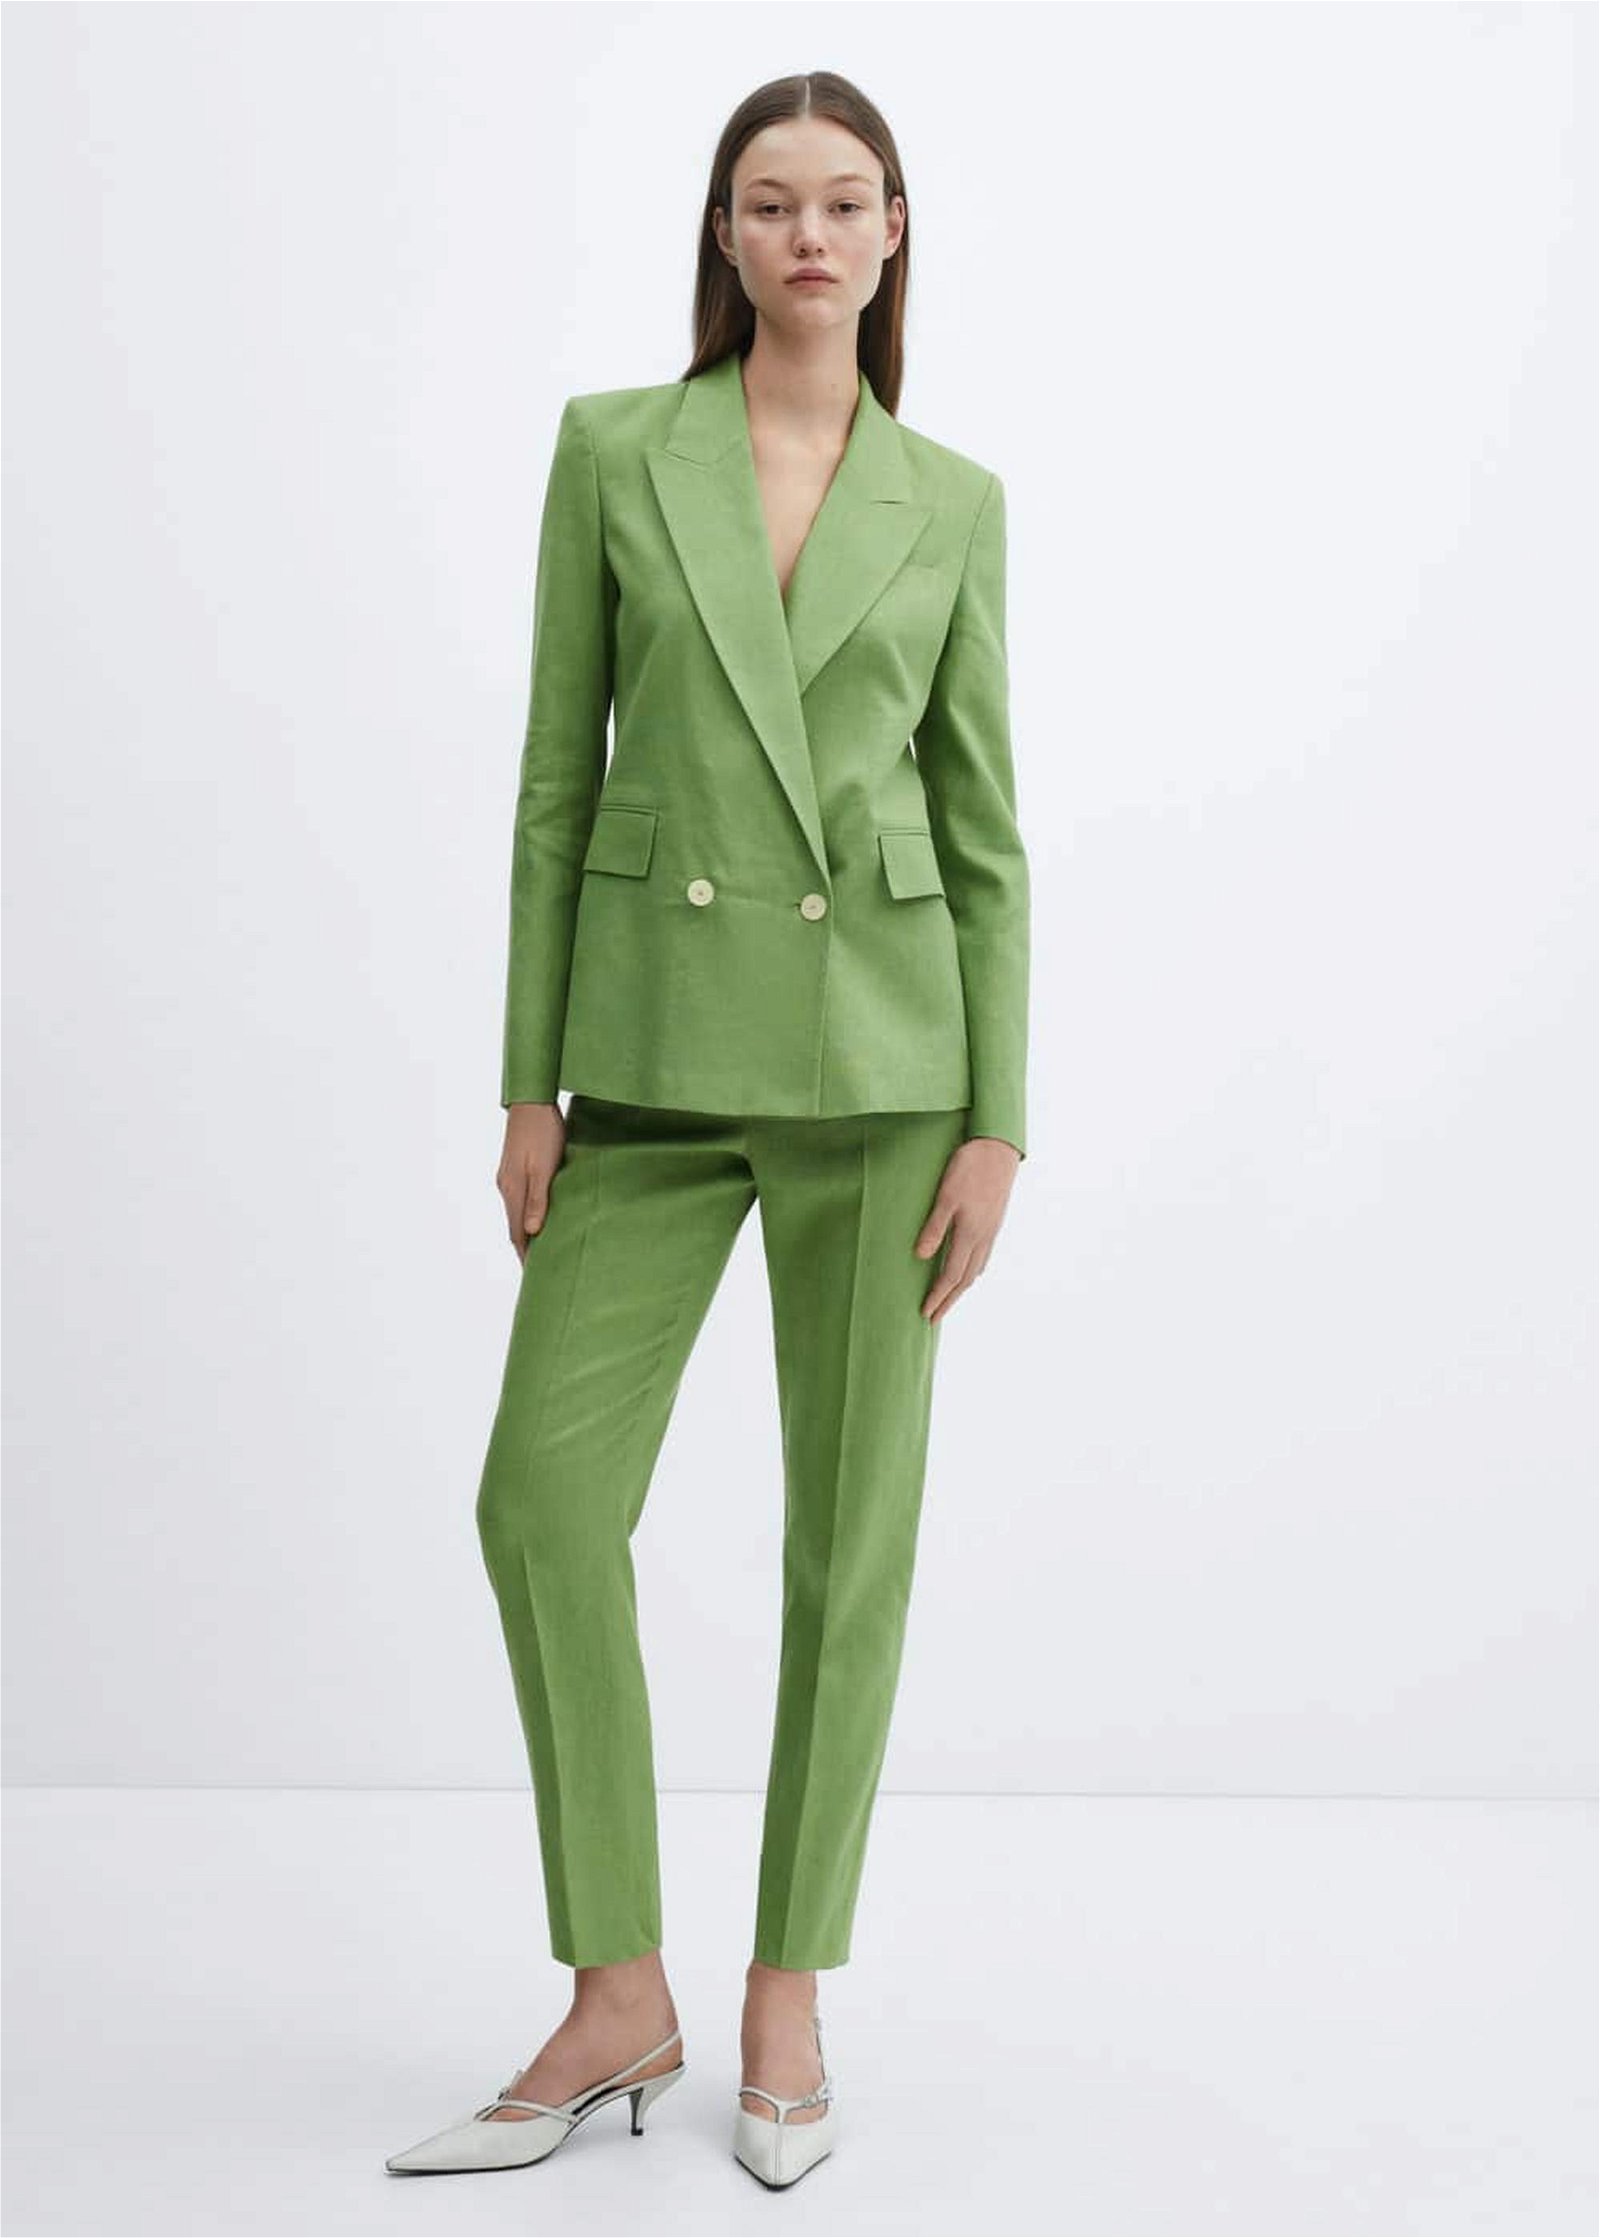 Mango Kadın %100 Keten Kumaş Blazer Ceket Yeşil